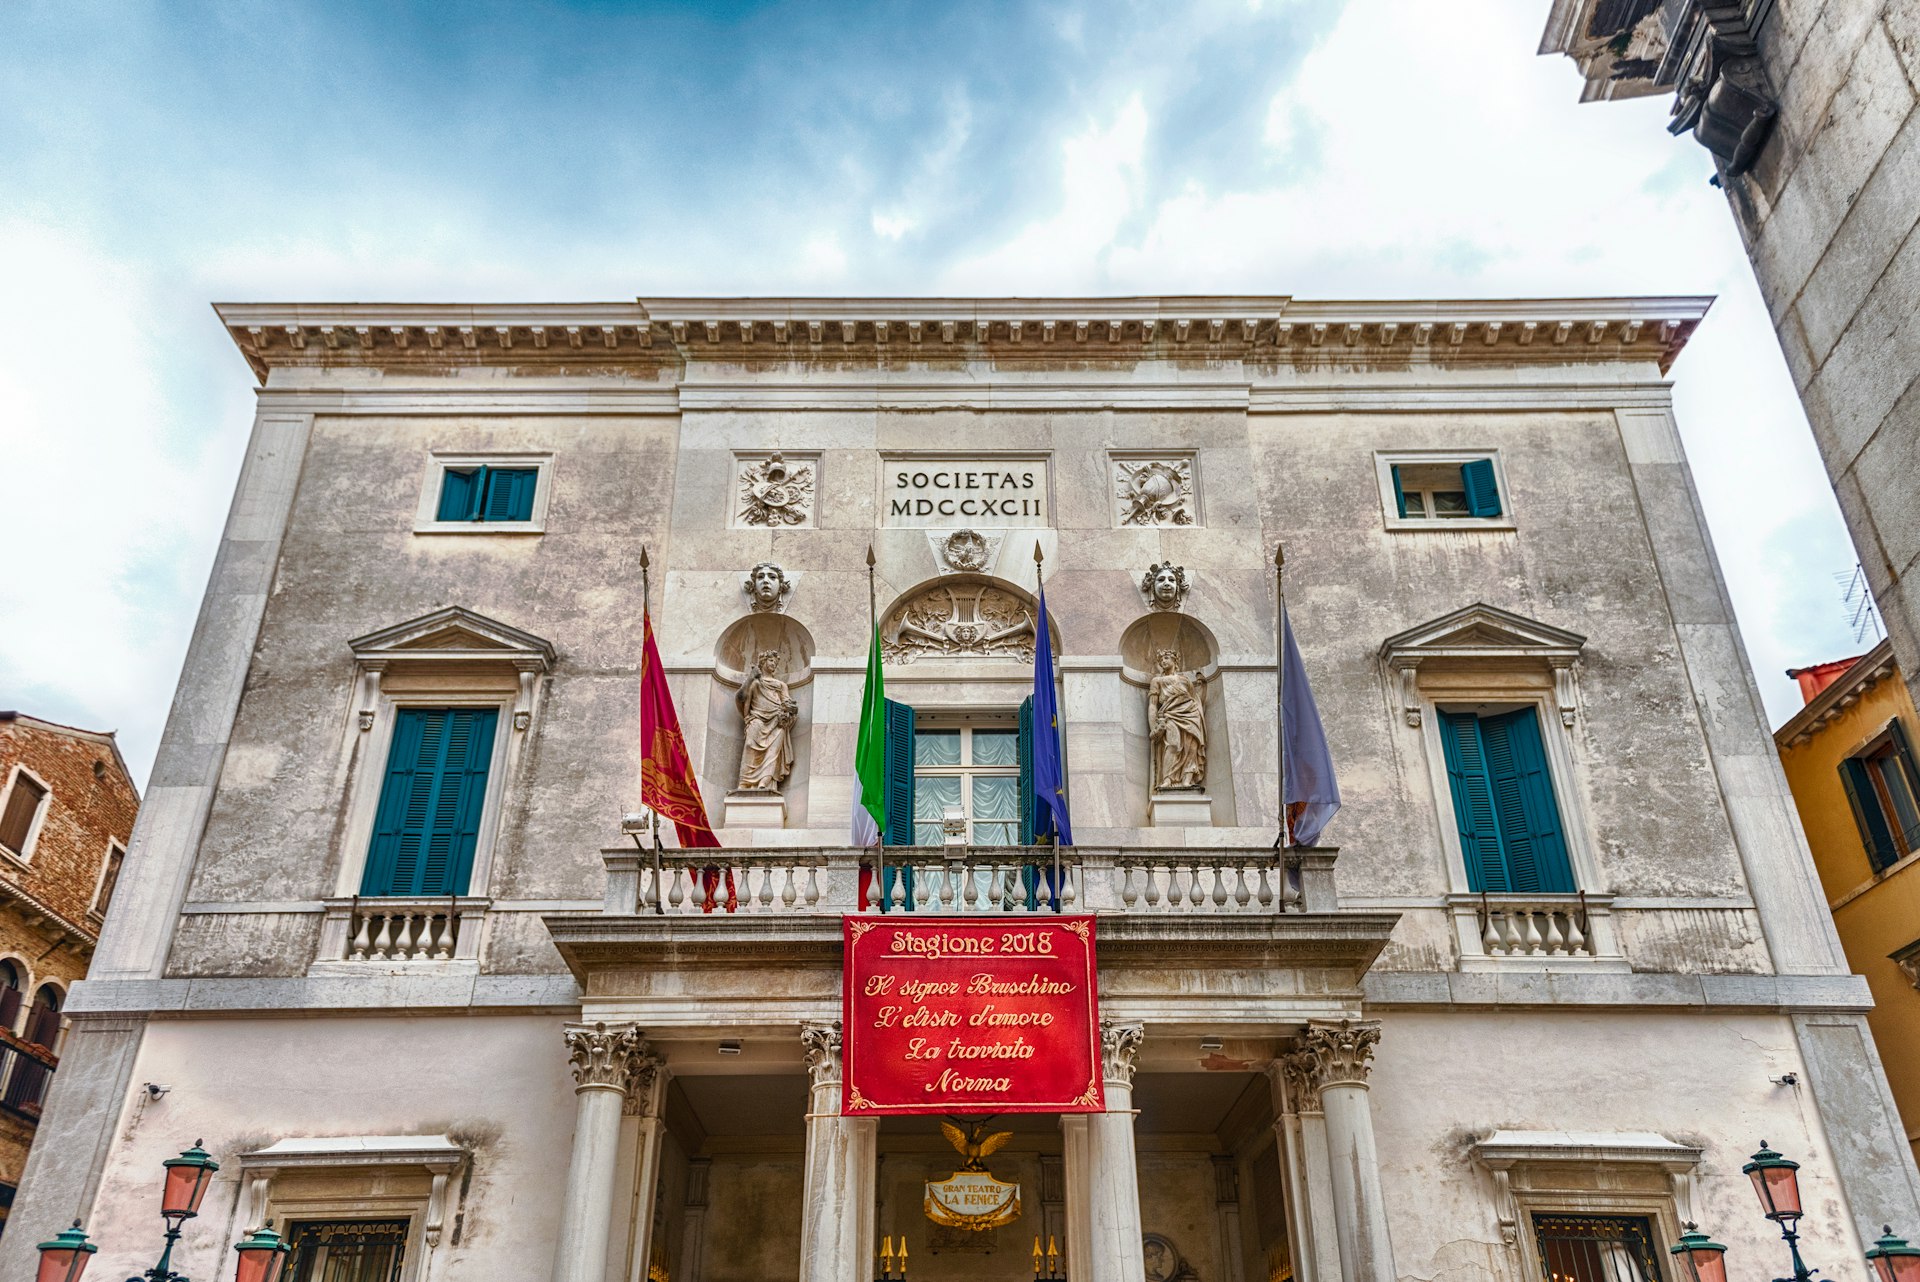 Facade of the iconic La Fenice theatre in Venice